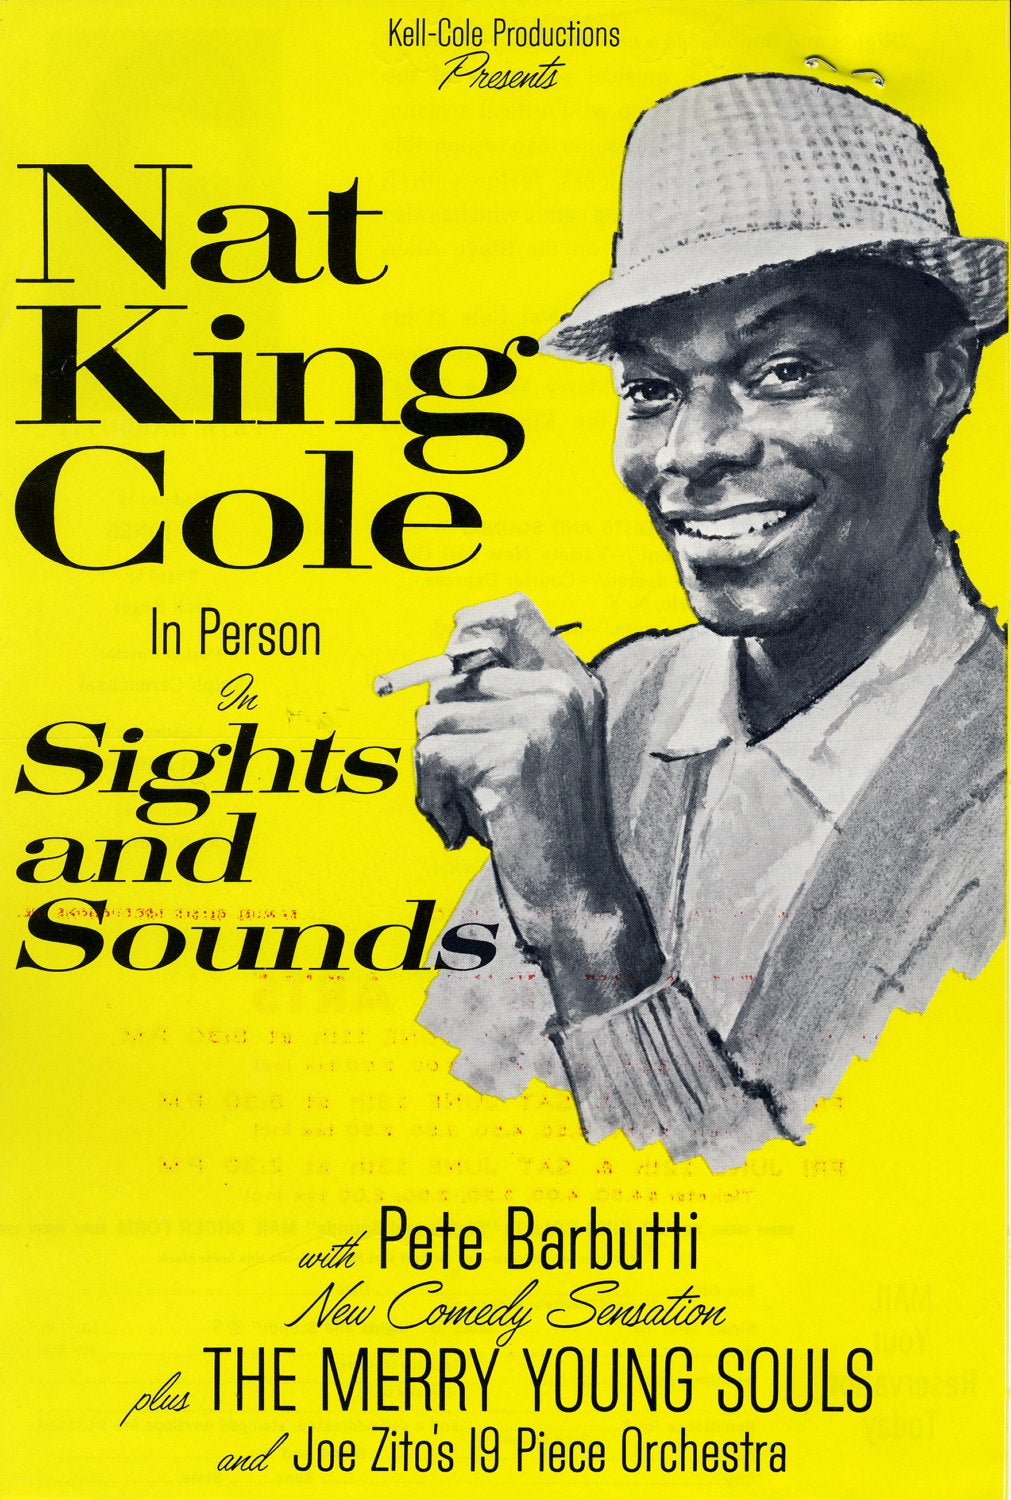 Vintage Music Art Poster - Nat King Cole - 0318